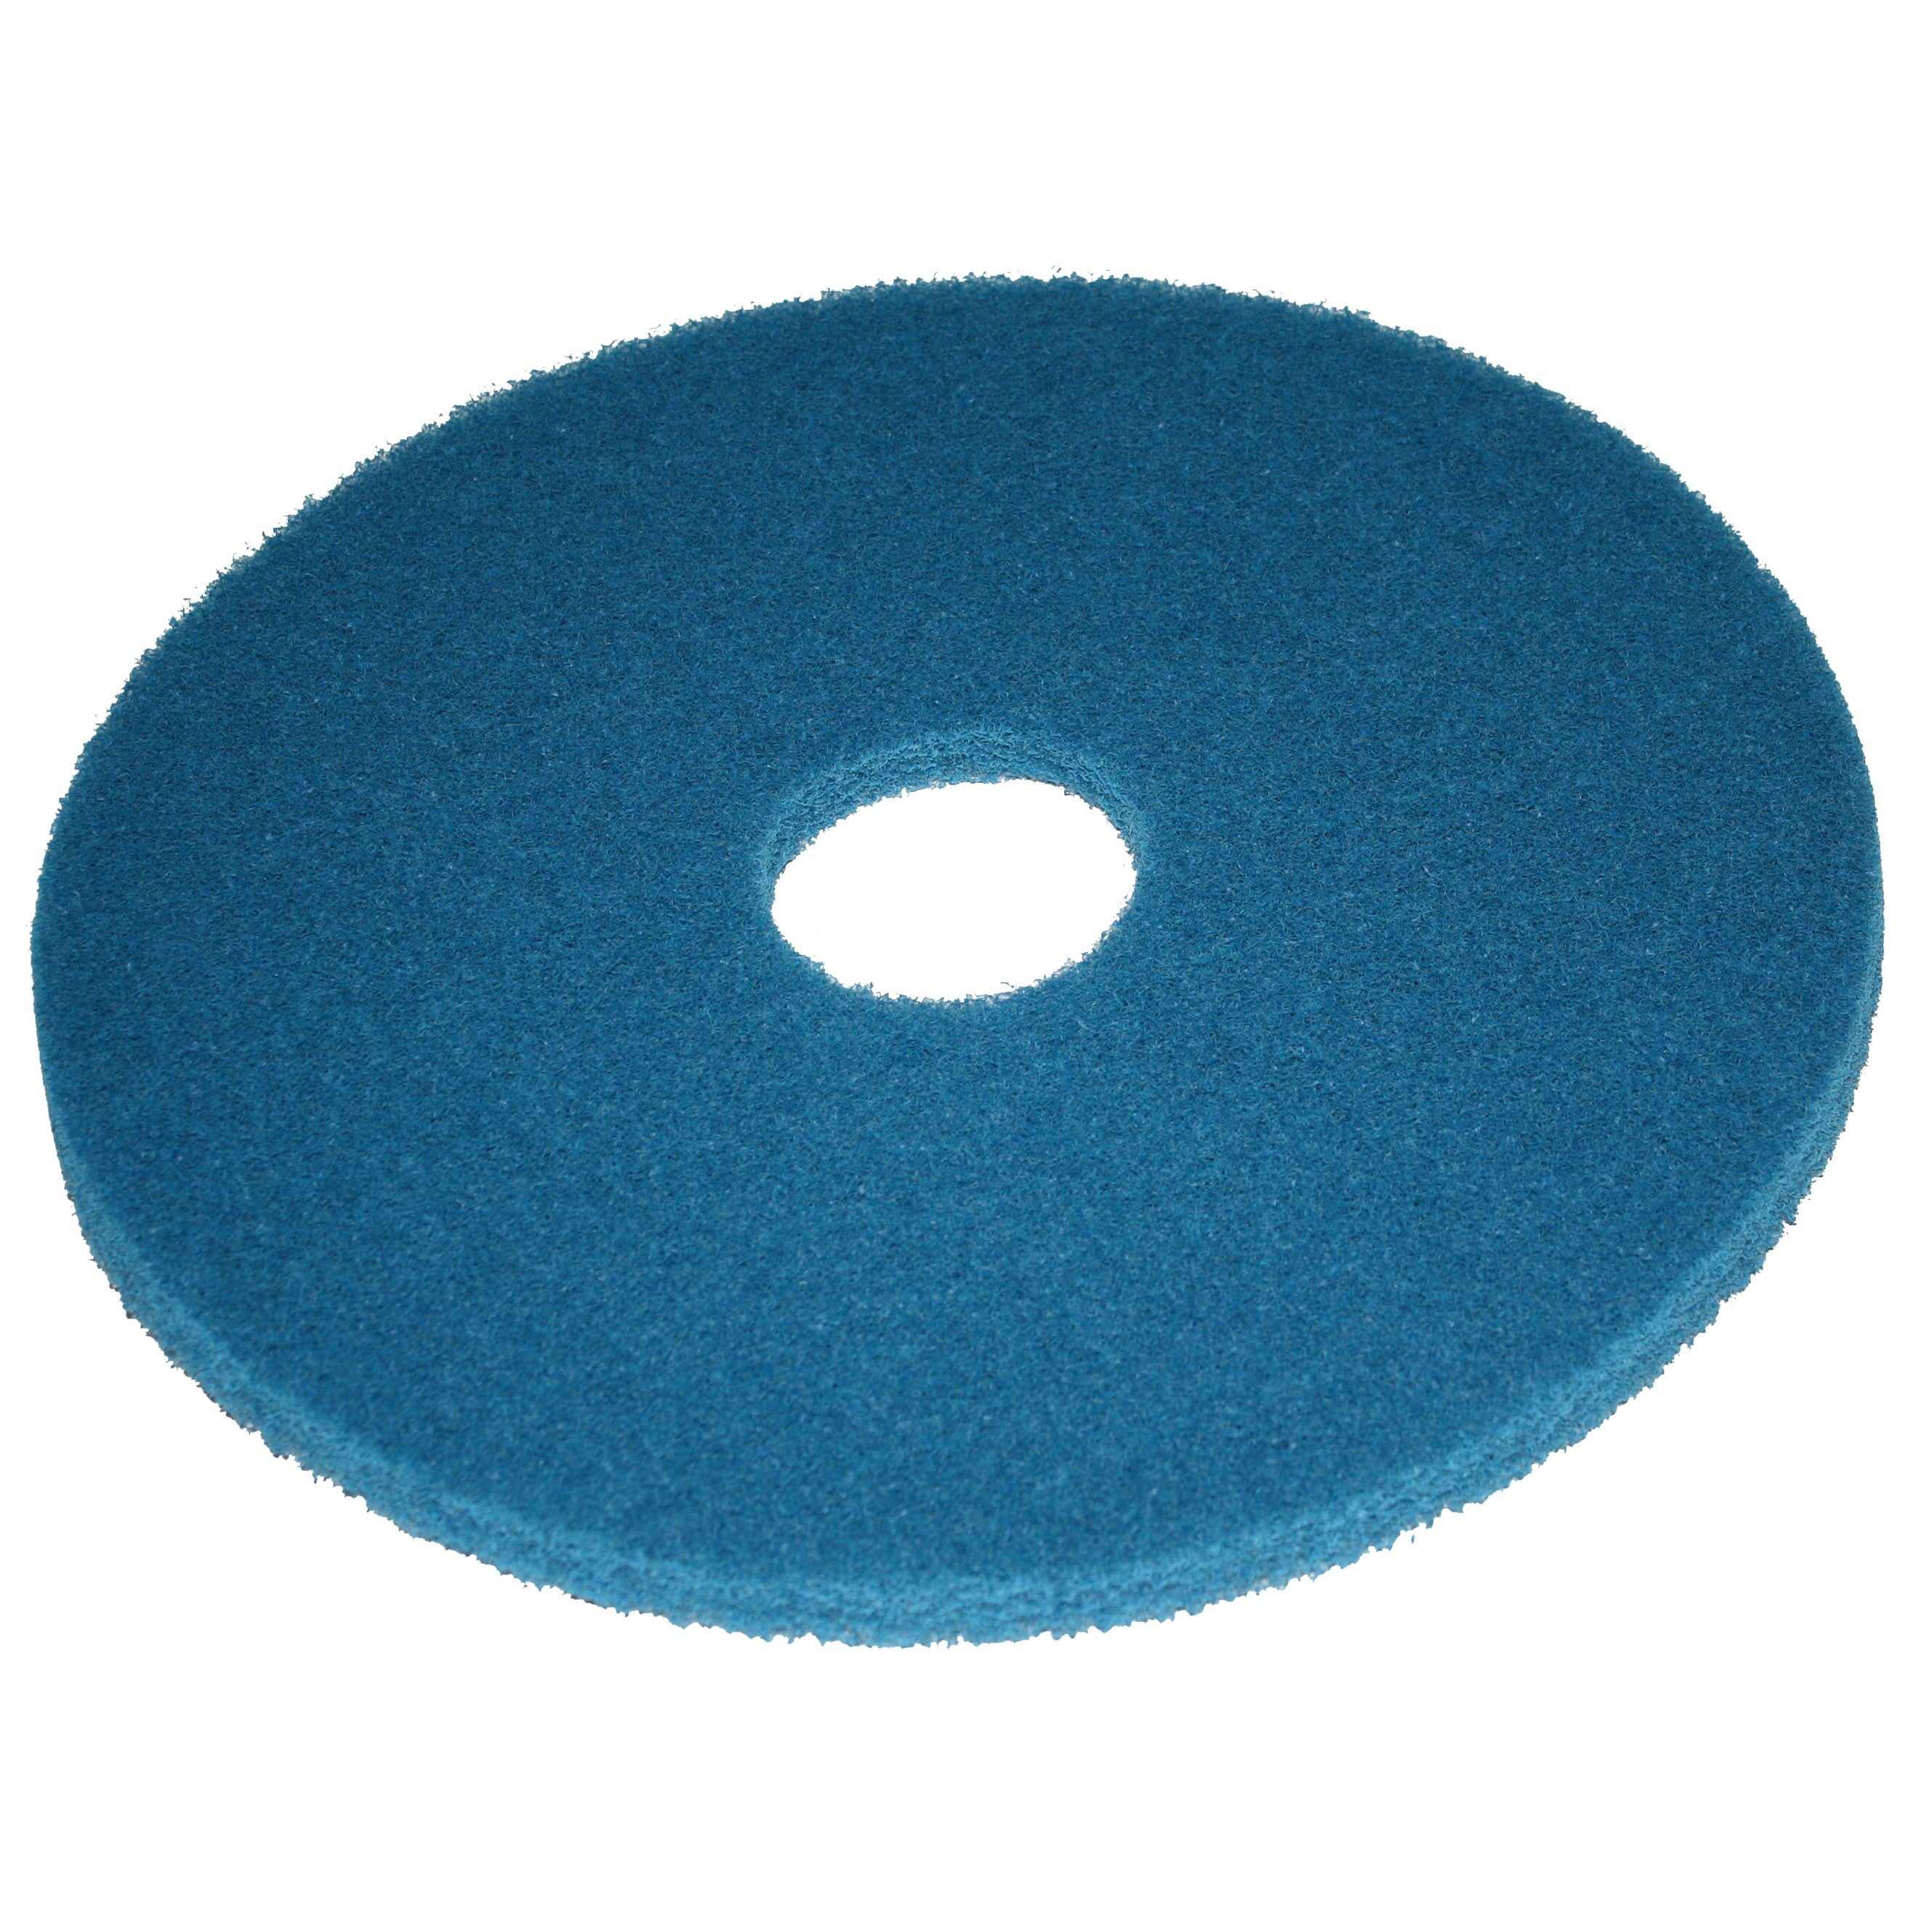 Pad bleu, Ø 532 mm, polyester